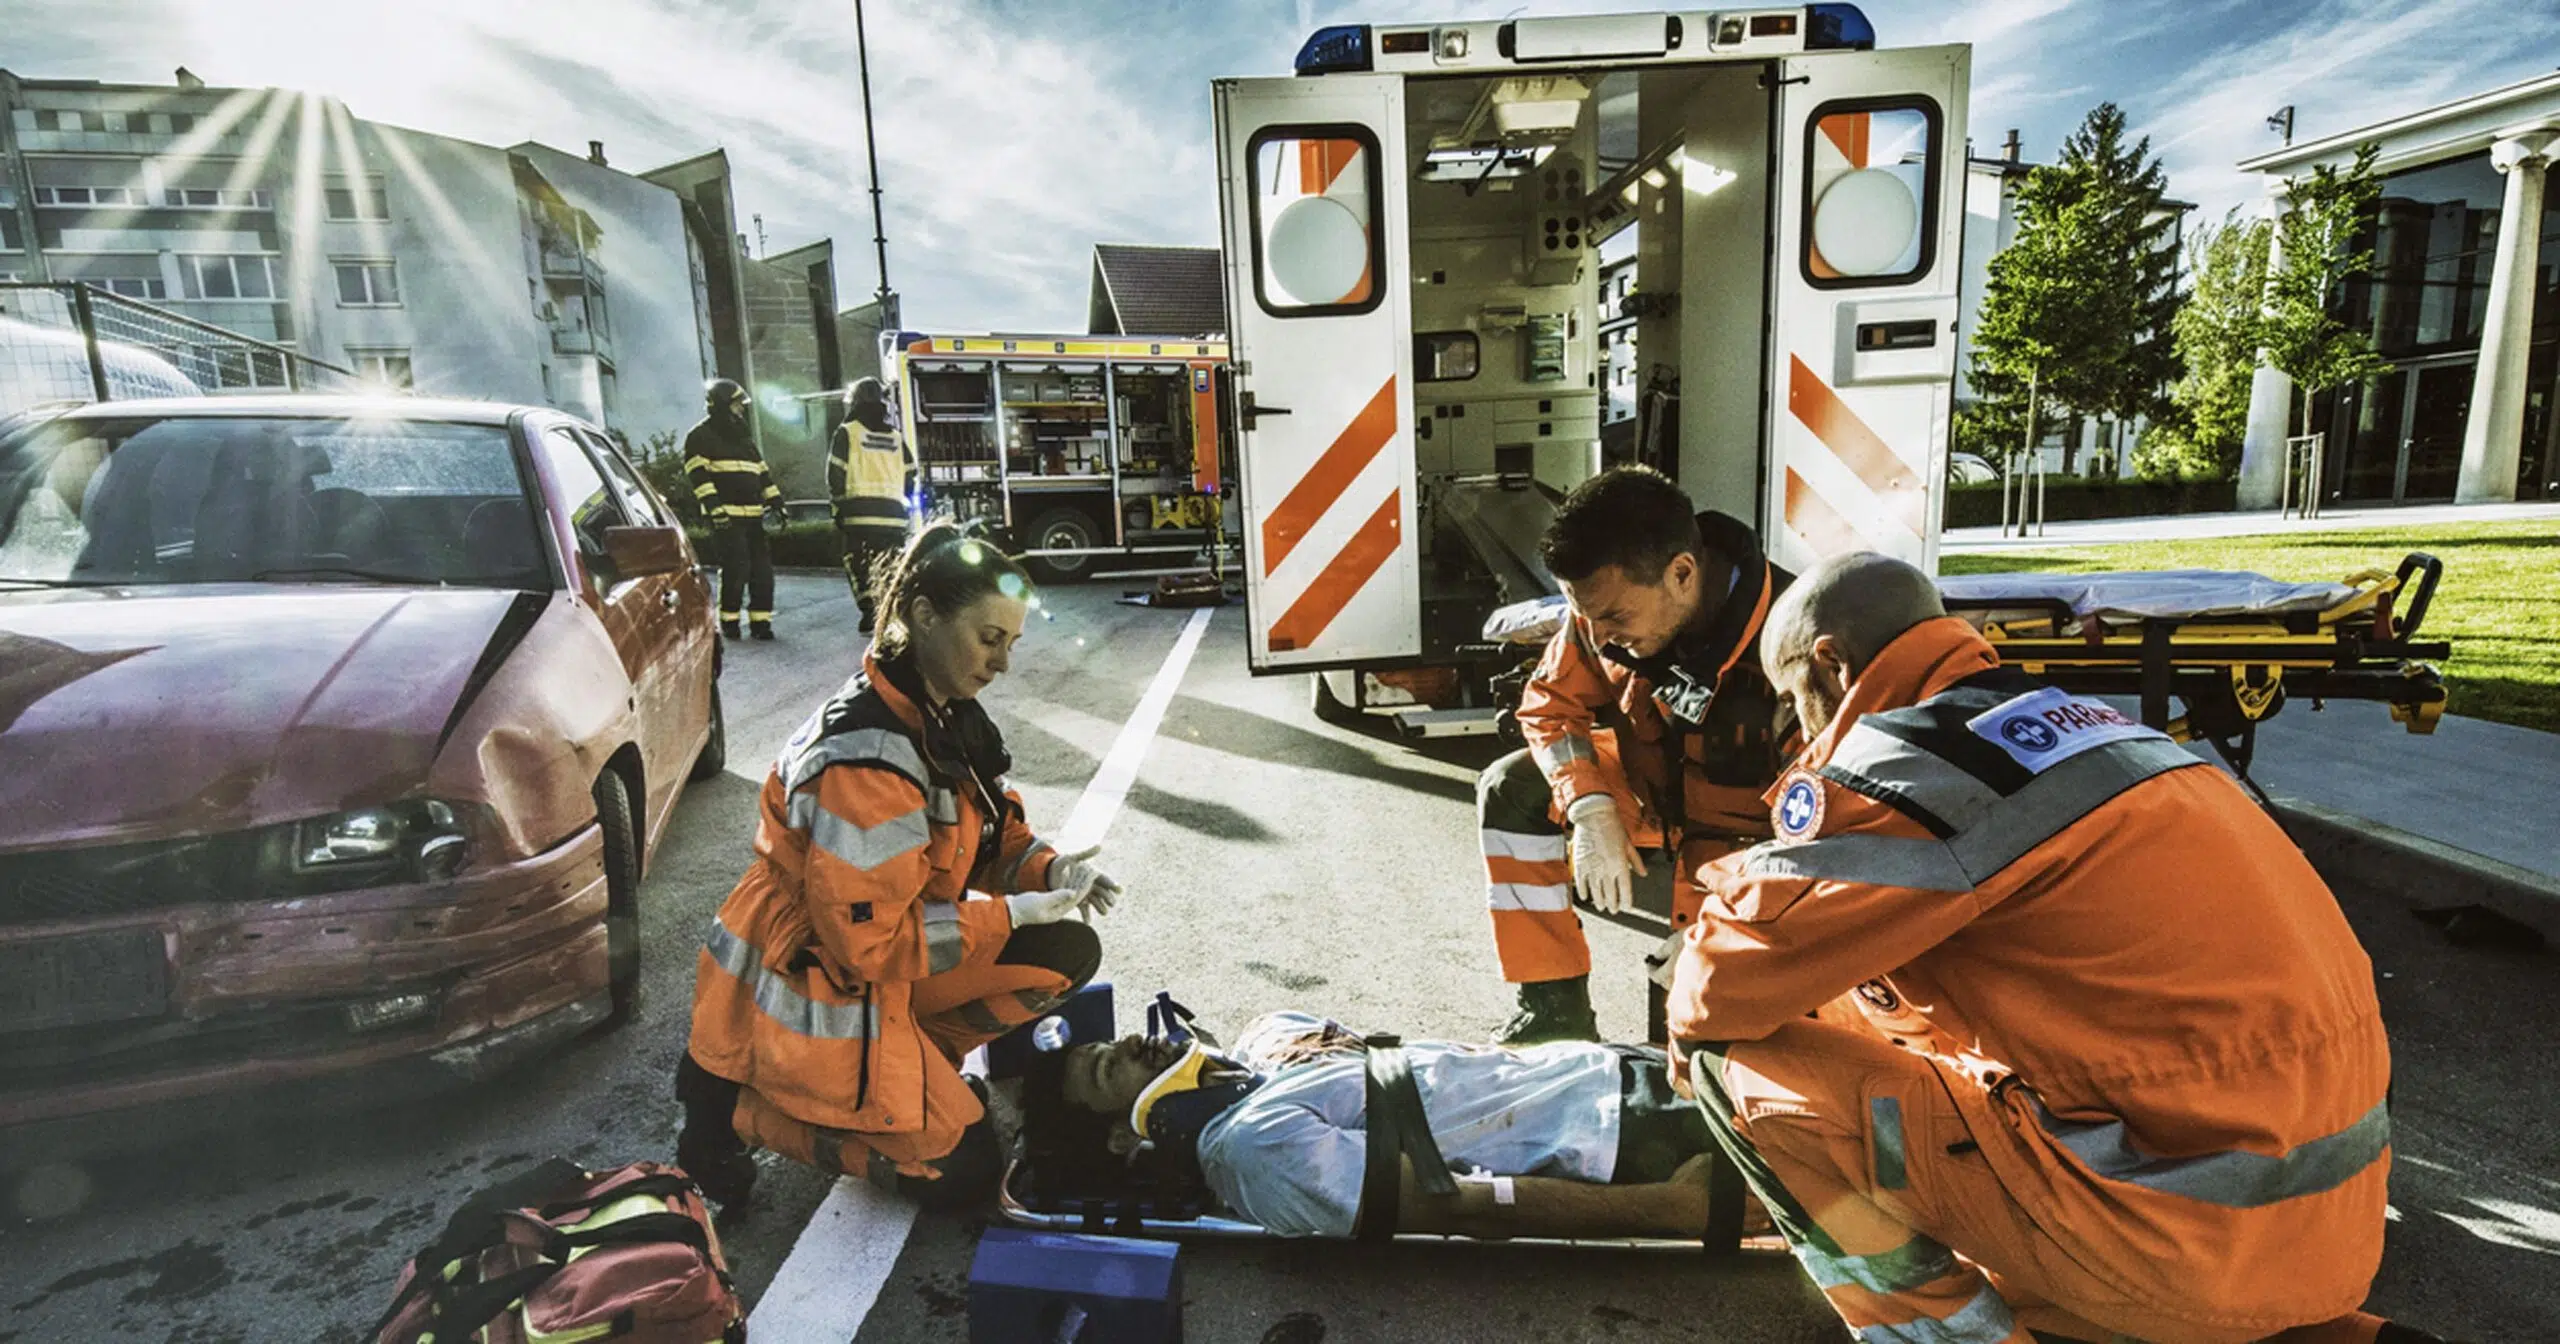 Paramedic or EMT